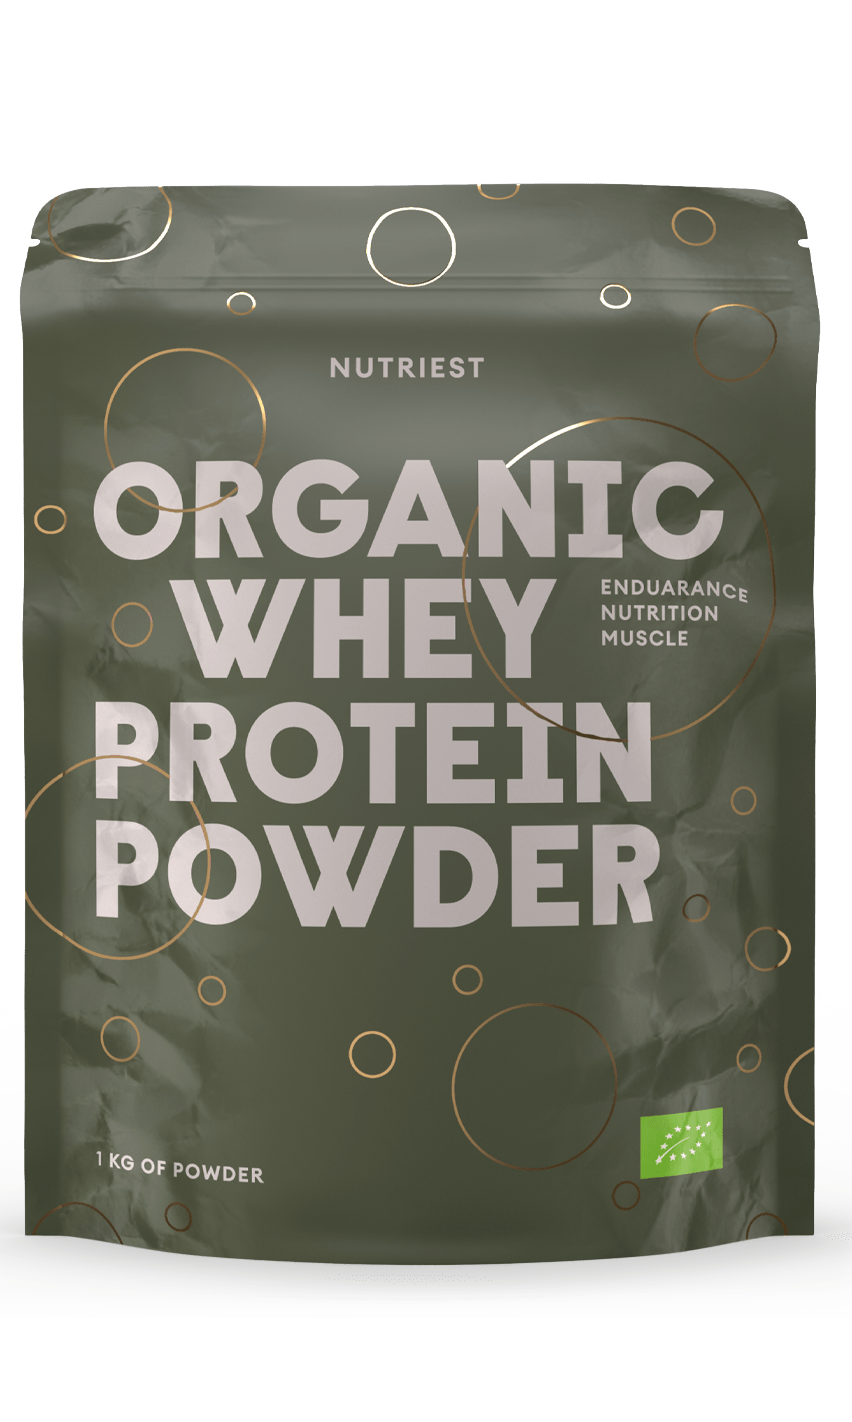 Organic high quality whey protein powder - 1 Kg